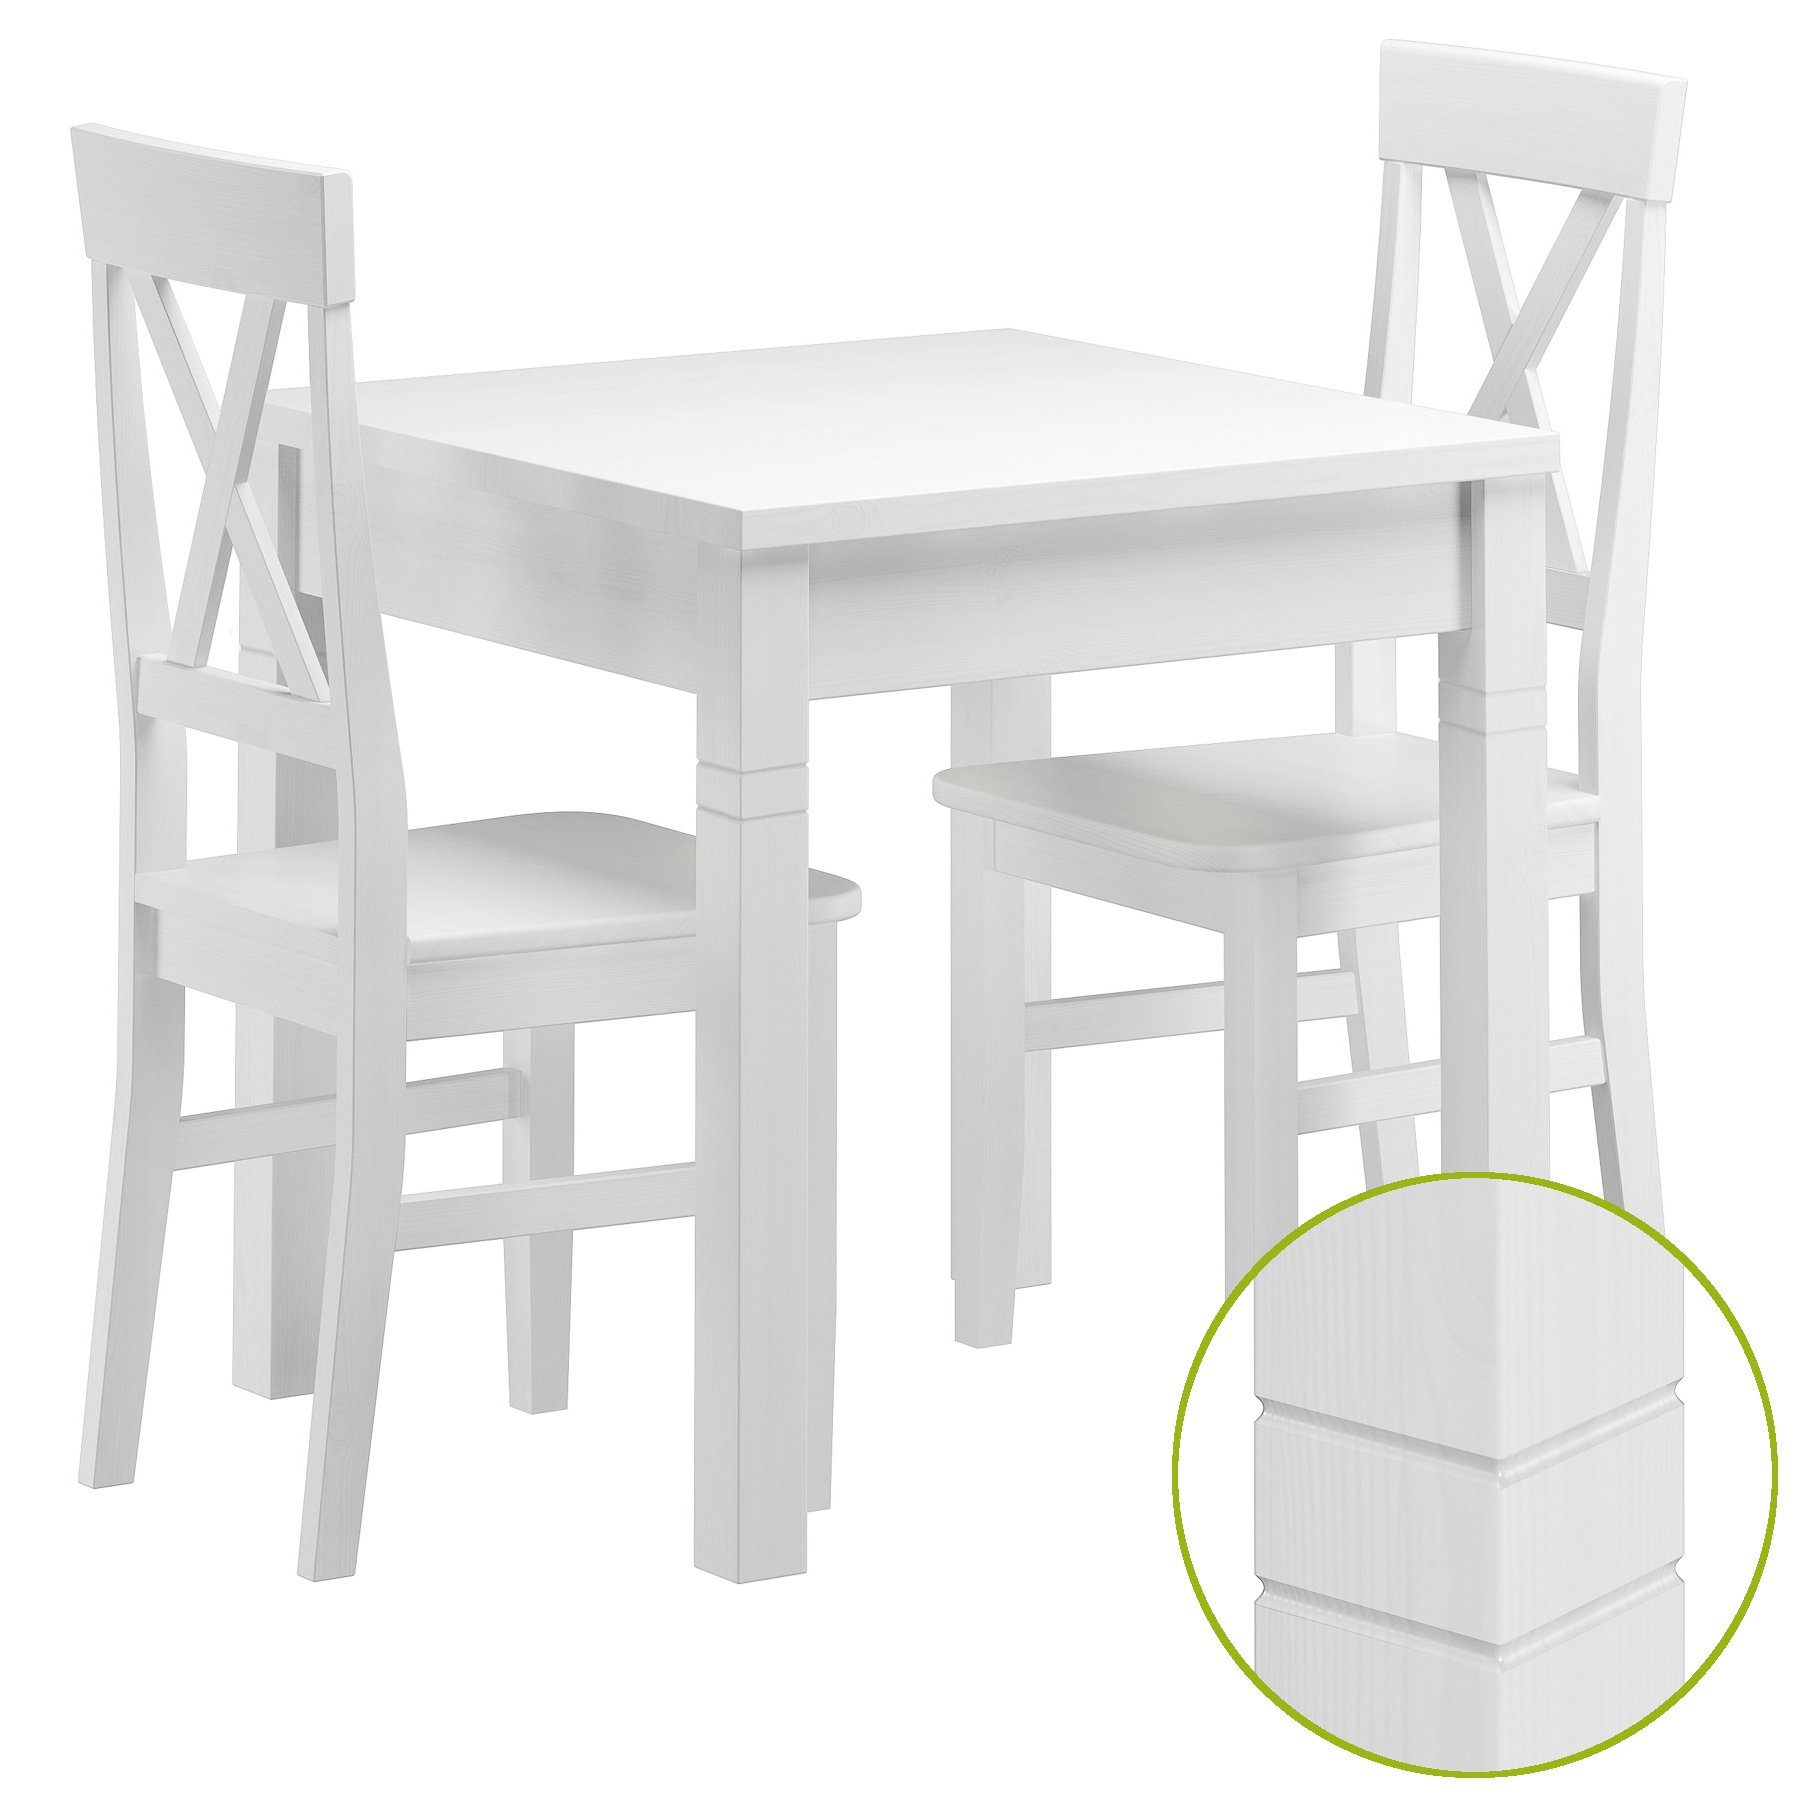 ERST-HOLZ Essgruppe Tisch-Set mit Tisch und 2 Stühle Kiefer Massivholz waschweiß